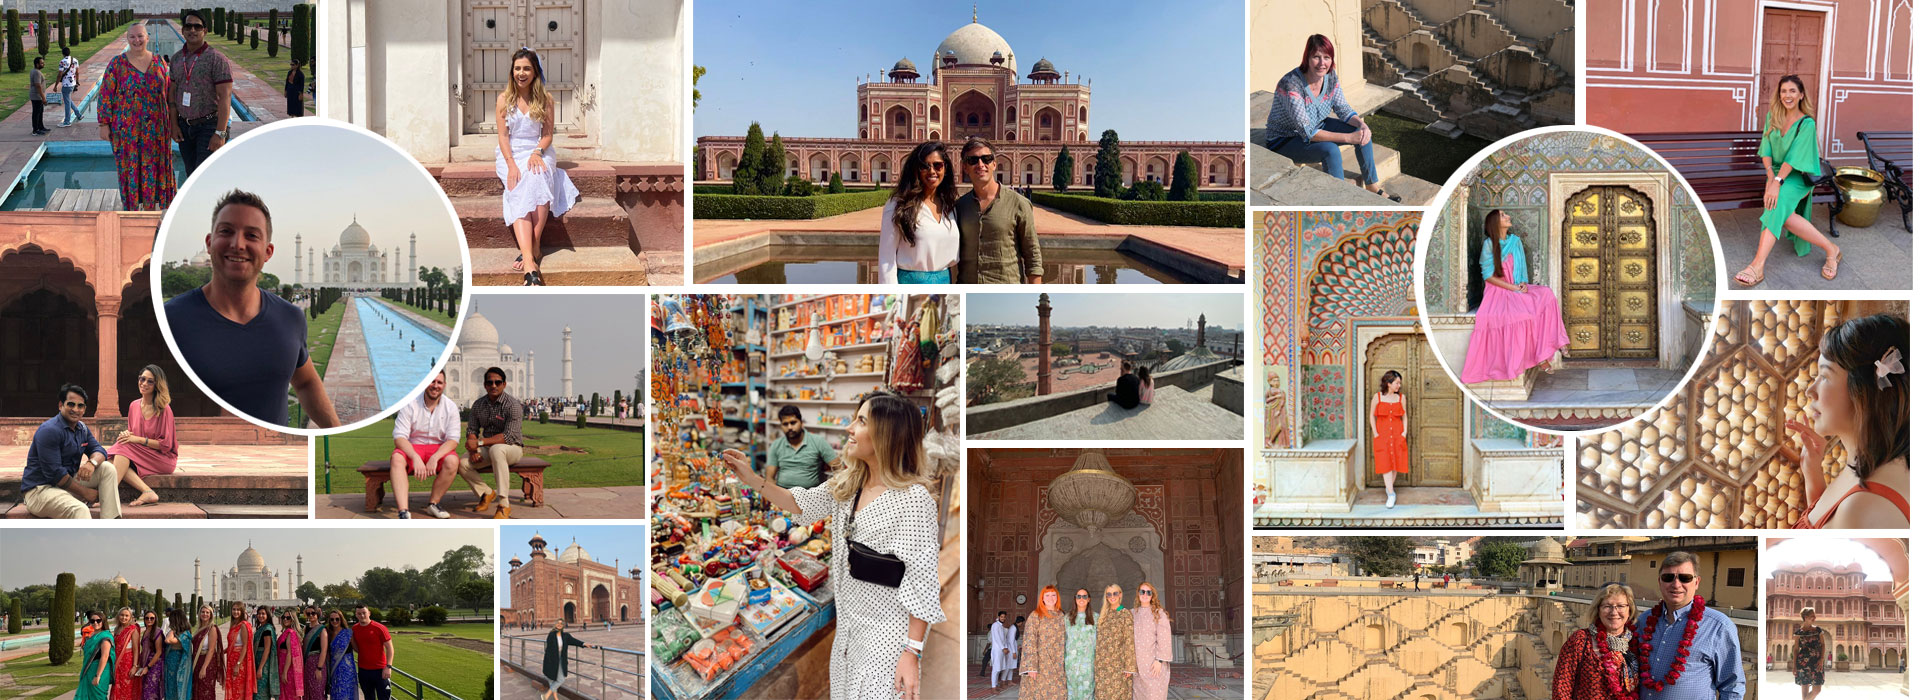 Best Taj Mahal Day Tour From Delhi